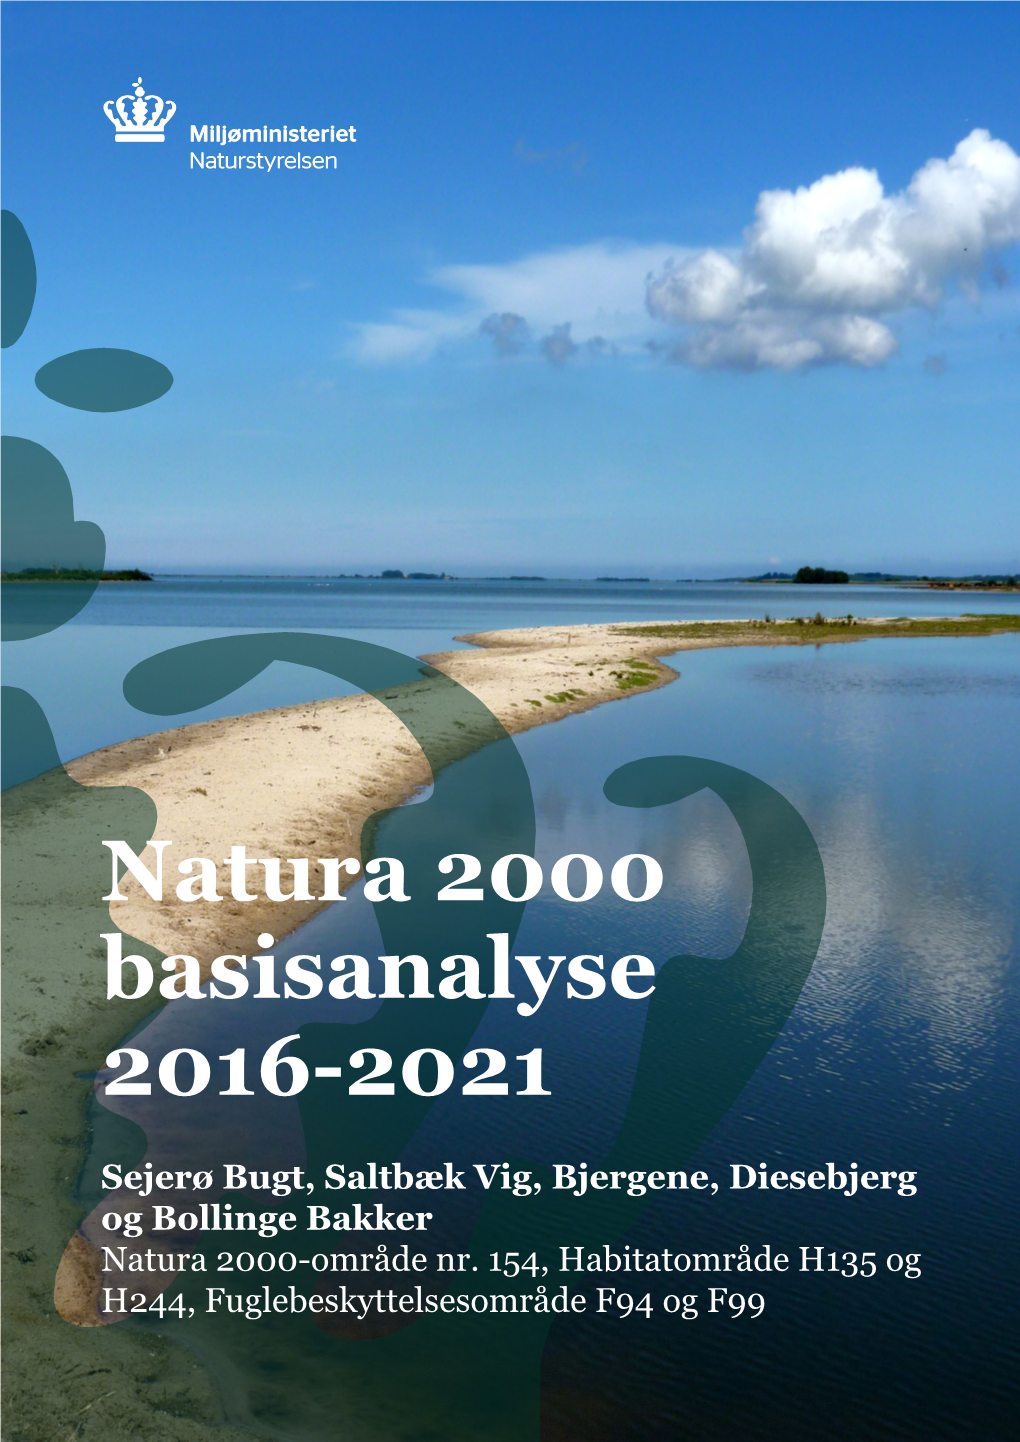 Natura 2000 Basisanalyse 2016-2021